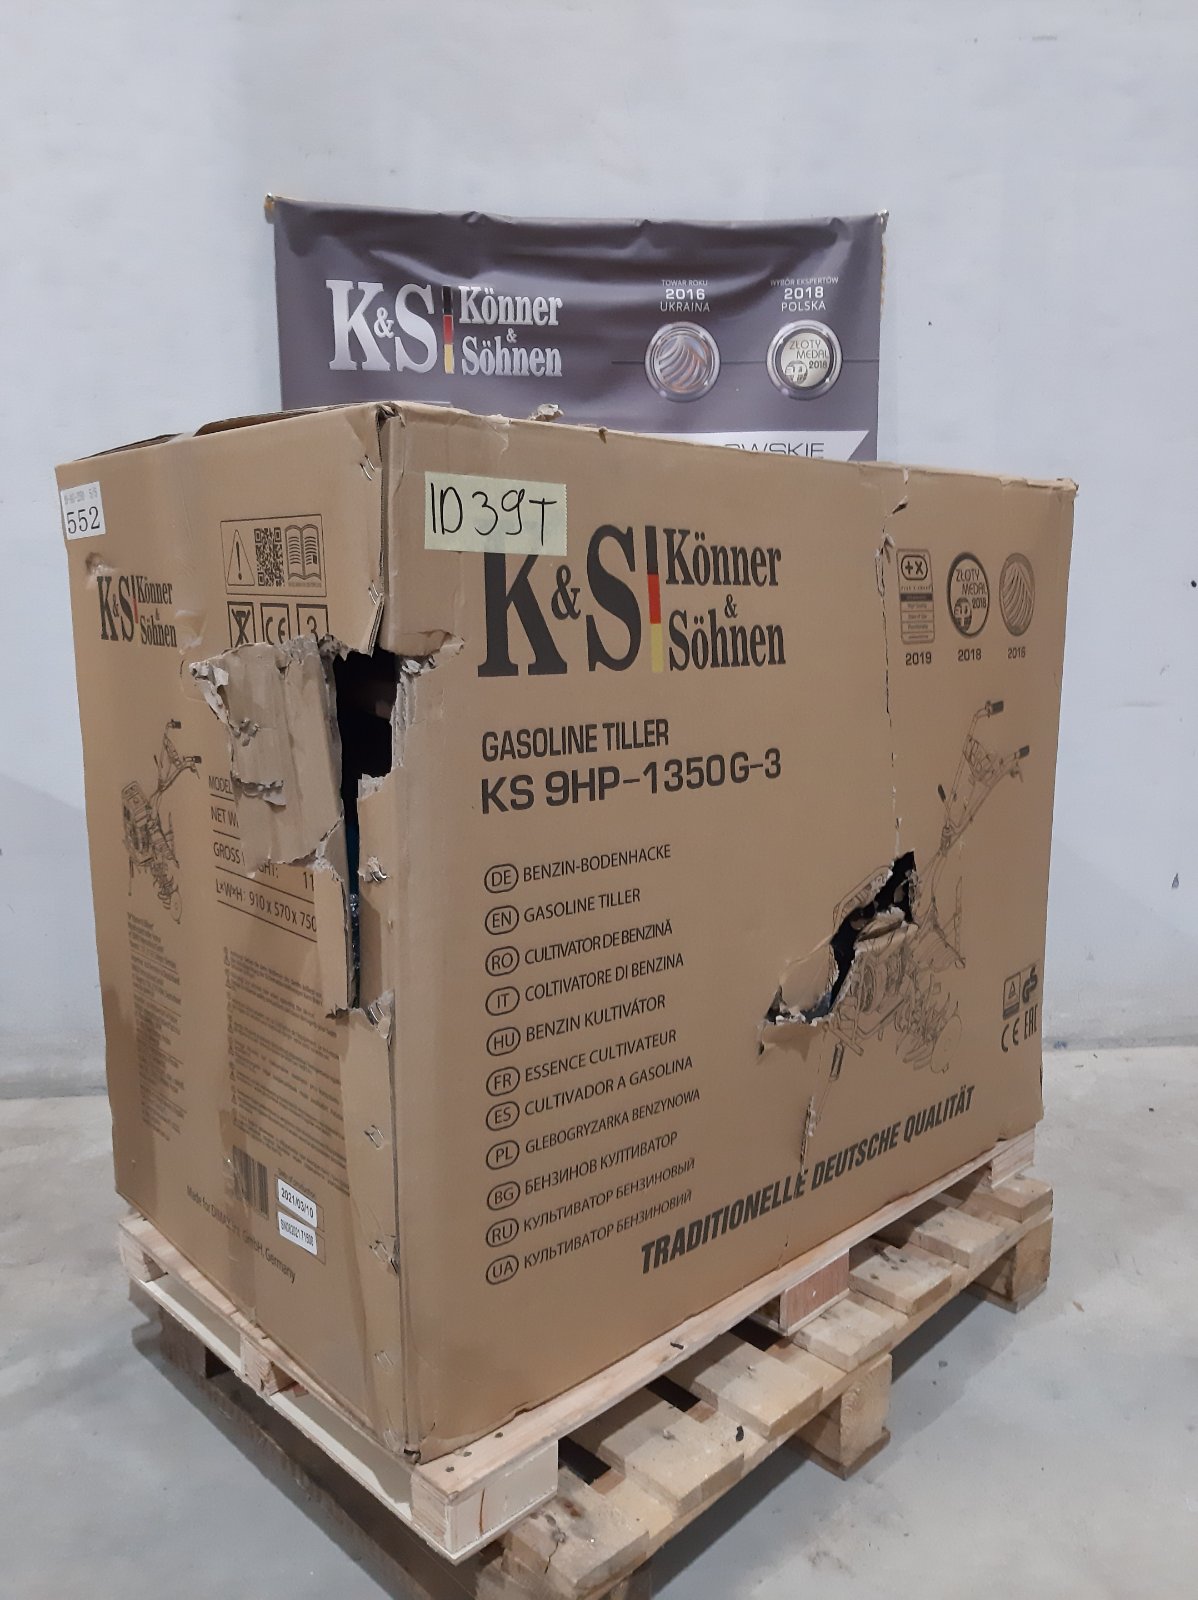 KS 9HP-1350G-3 (400) (ID 39 T)